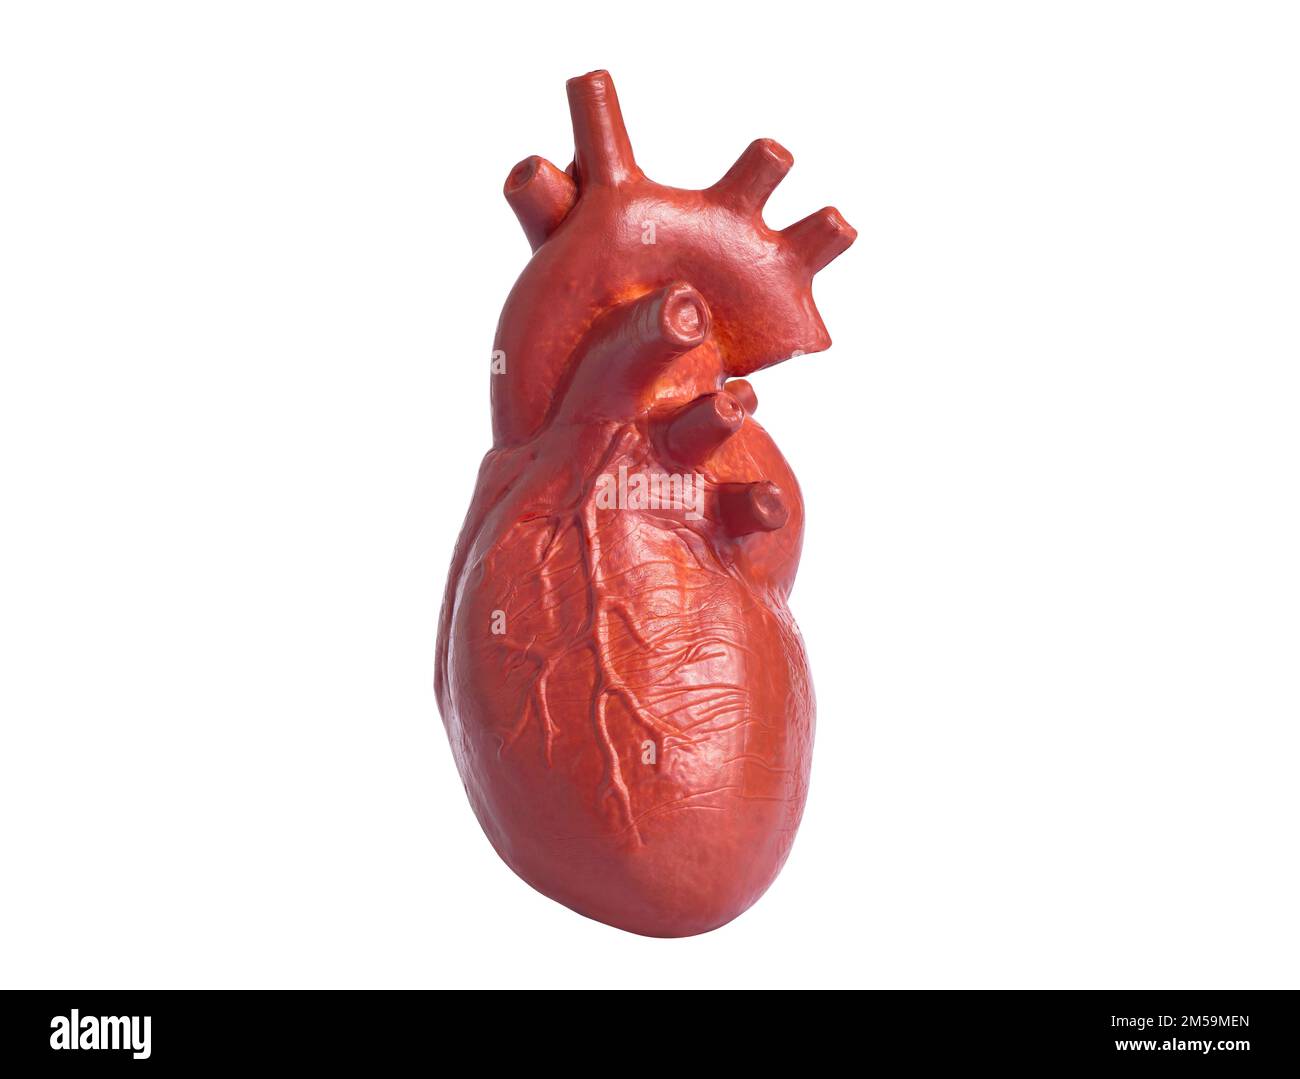 Primo piano di una copia anatomica in miniatura di un cuore umano isolato su sfondo bianco. Insegnare l'anatomia e gli organi del corpo umano. Foto Stock